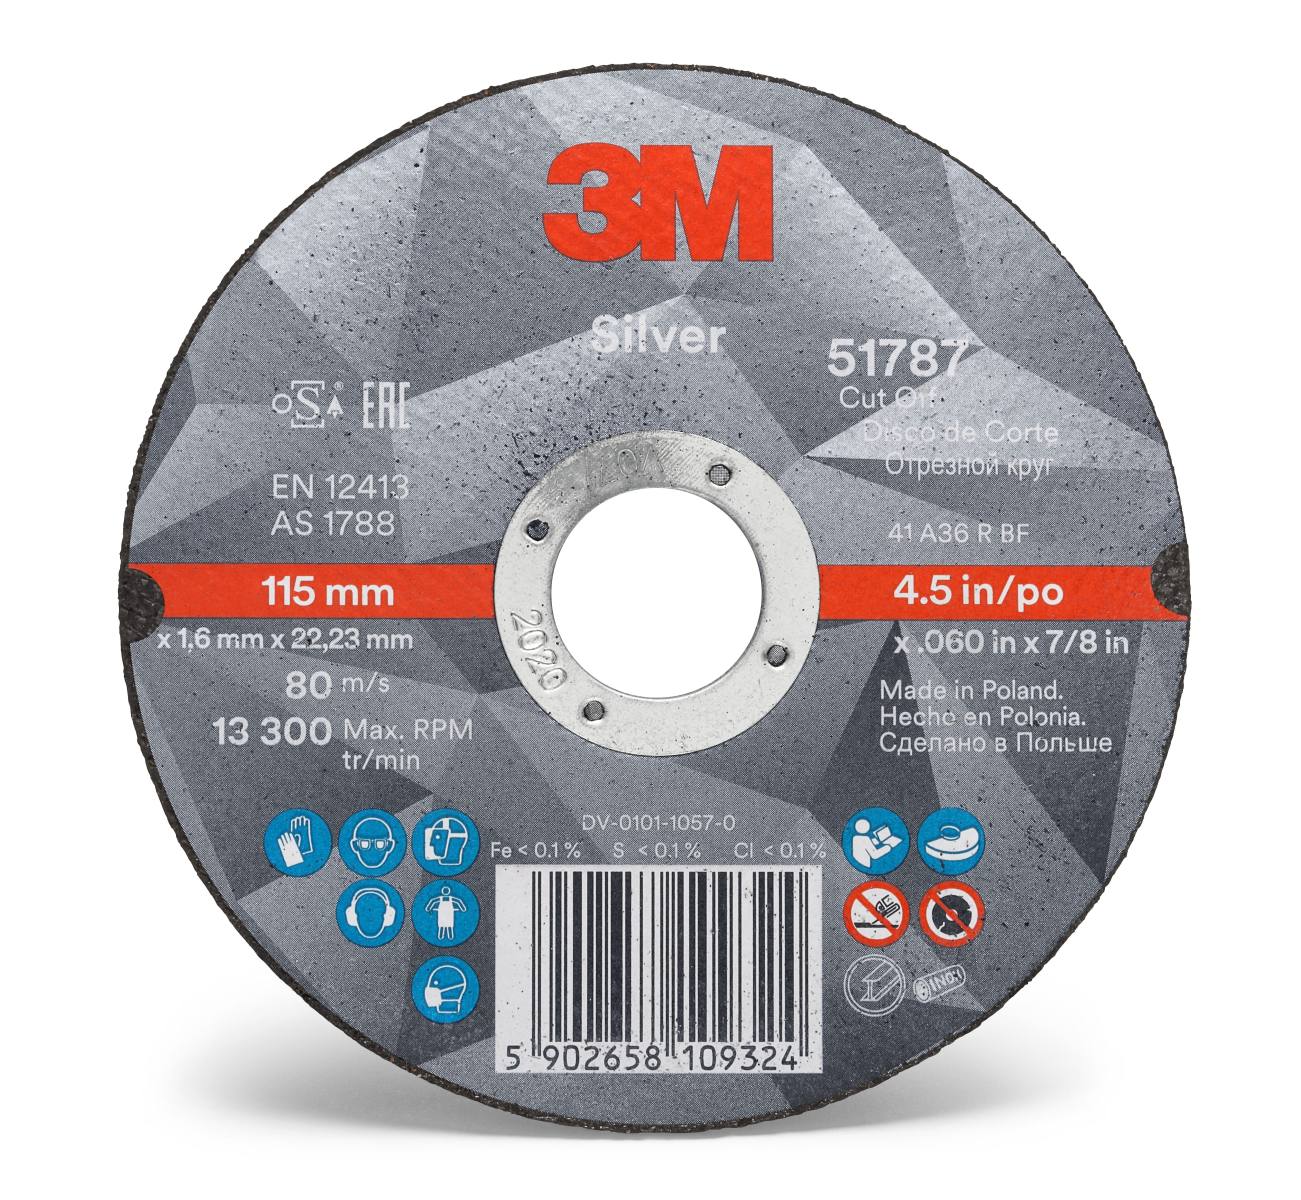 3M Silver Cut-Off Wheel Disque à tronçonner, 105 mm, 1,0 mm, 10 mm, T41, 51777